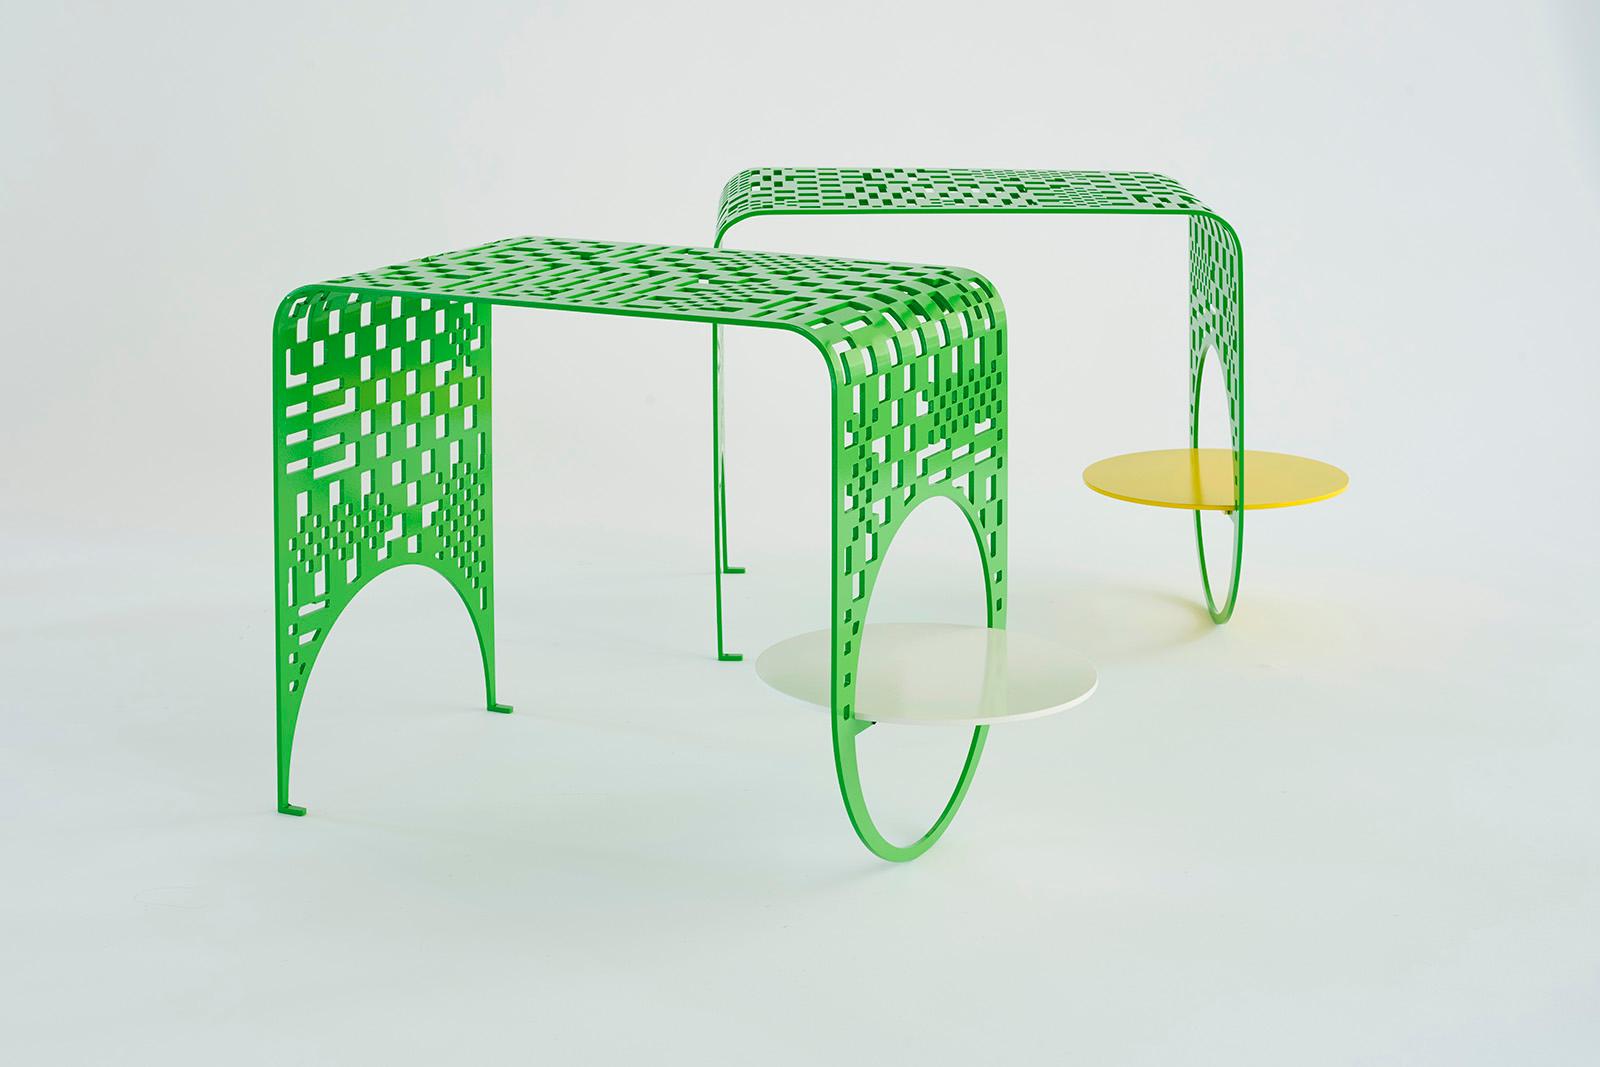 Für ihre erste Outdoor-Möbelkollektion haben Kin & Company in Zusammenarbeit mit der renommierten Textildesignerin Dusen Dusen den Thin Check Table als Teil einer Kollektion verspielter Loungesessel und Beistelltische entworfen, die mit einem der